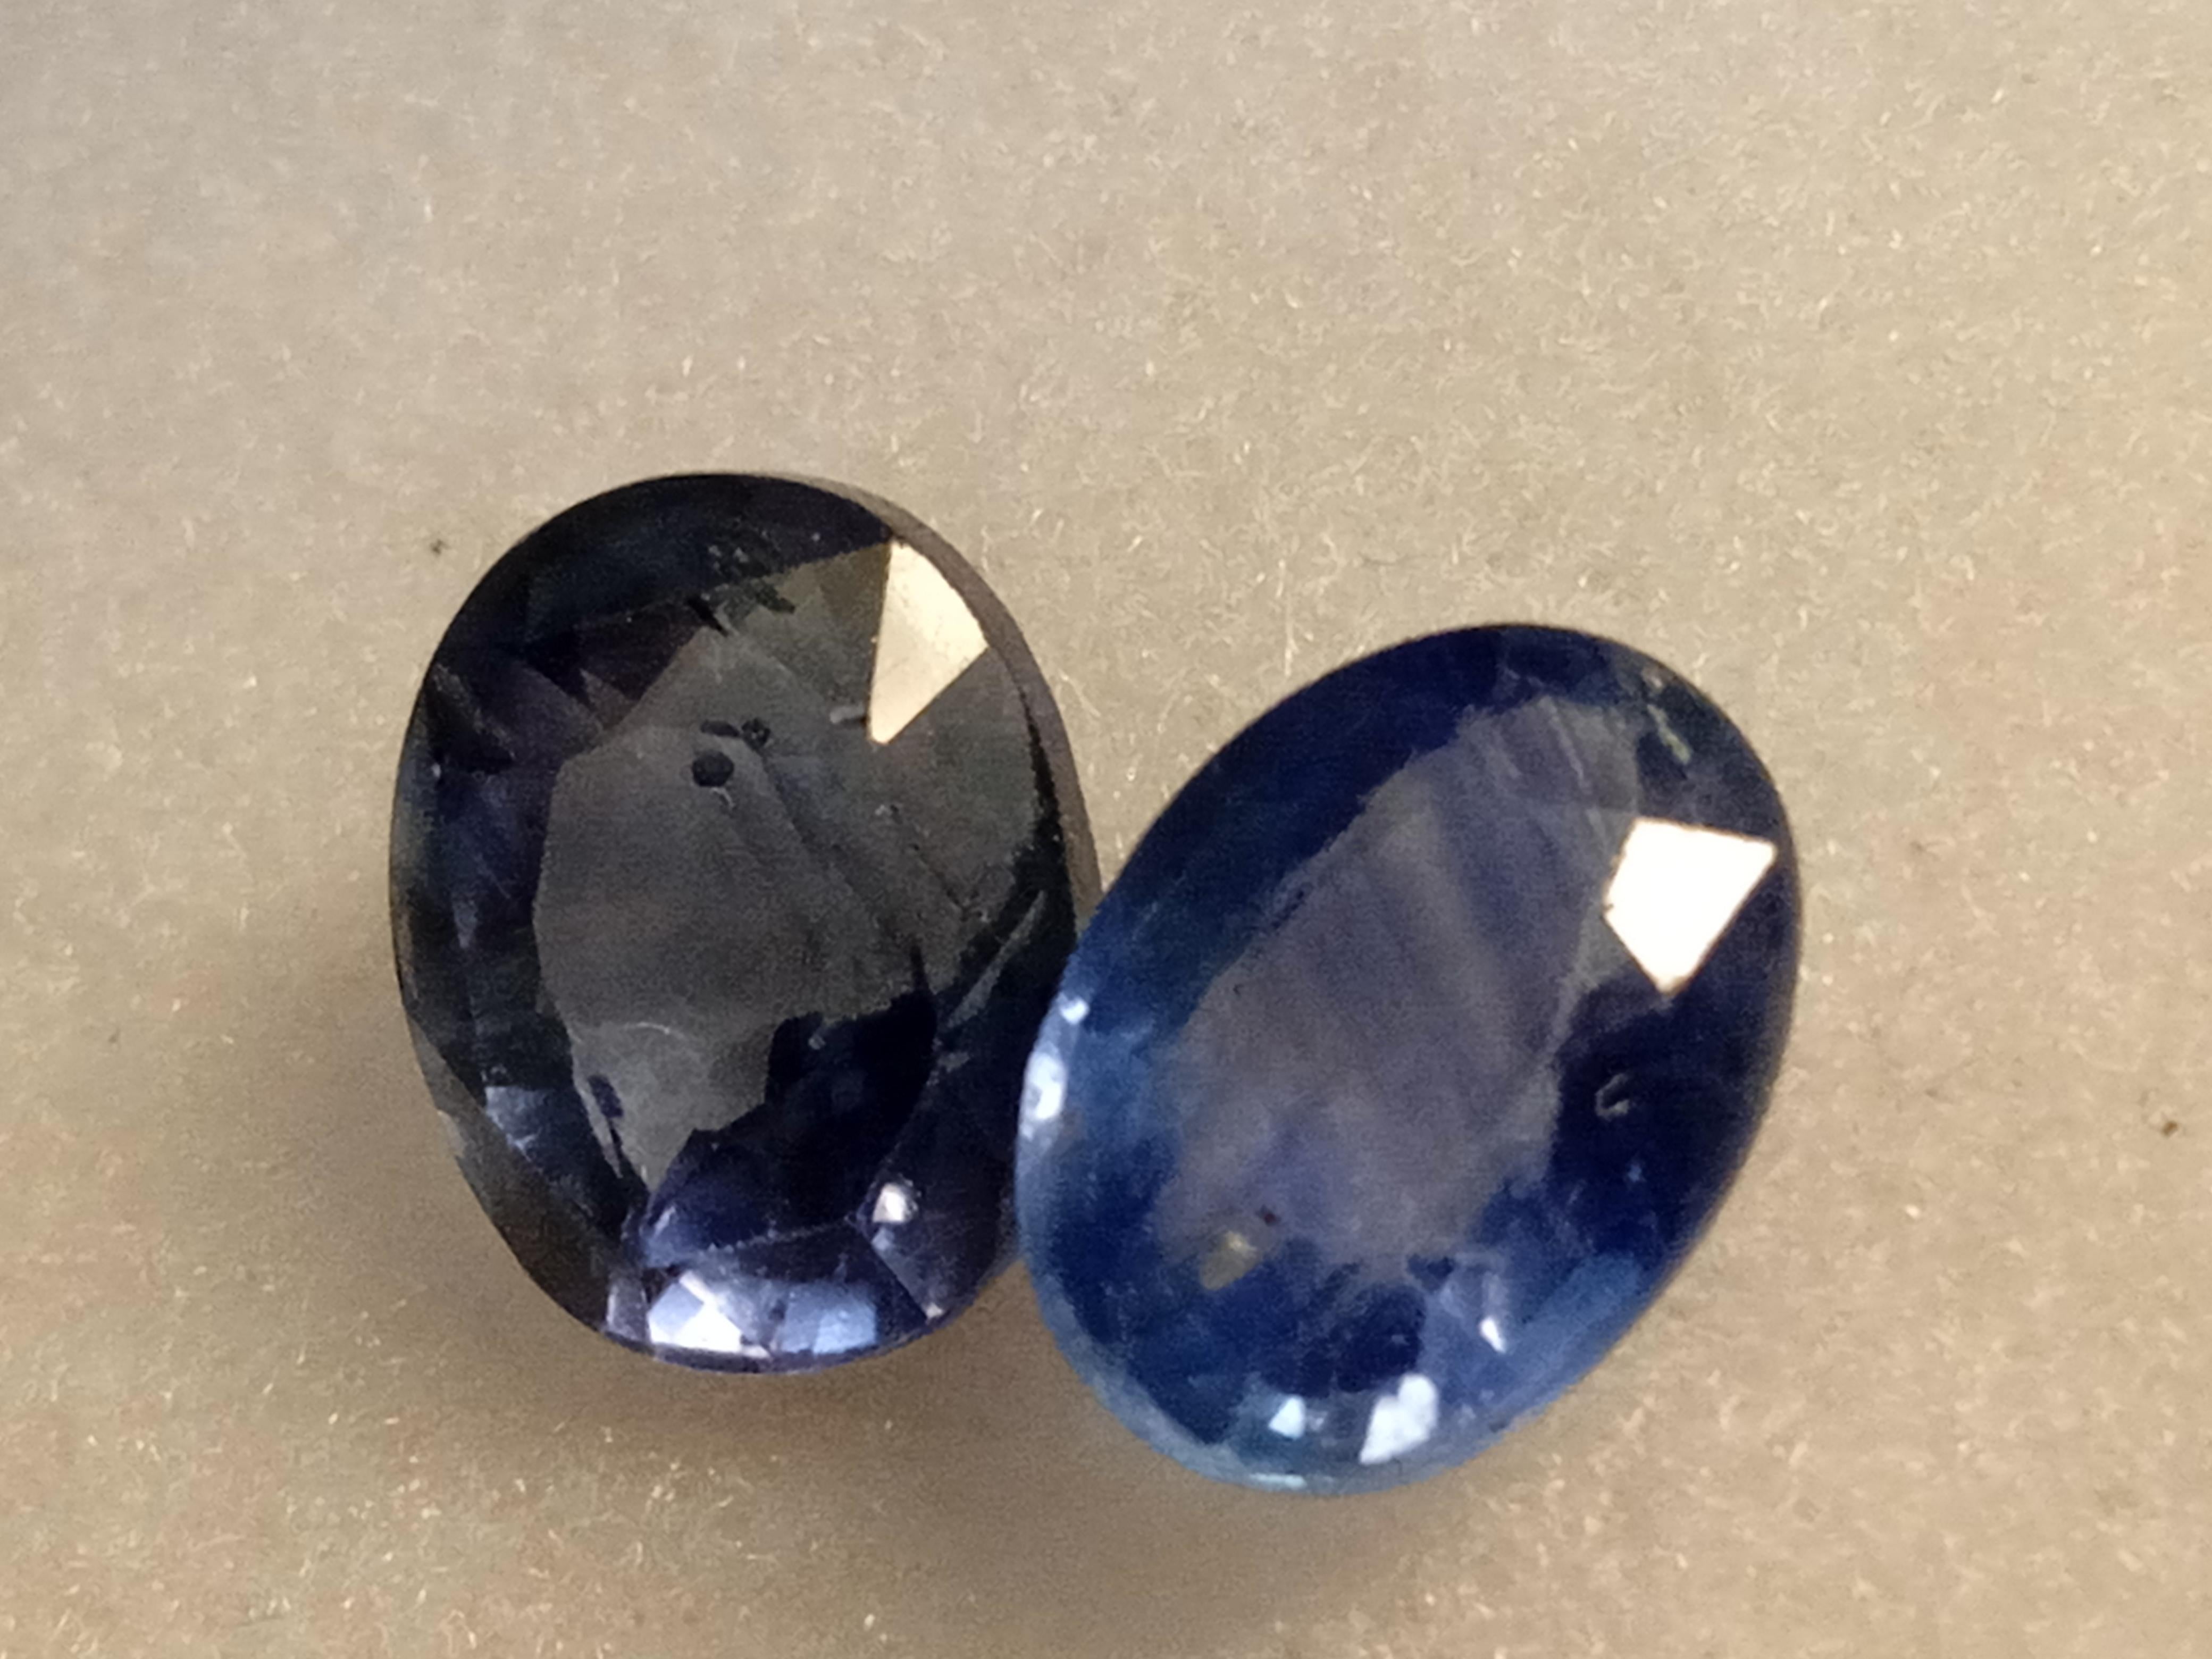 Améliorez votre collection de bijoux avec cette pièce exquise de saphir bleu naturel. La pierre précieuse a été taillée à la perfection dans une forme ovale et se targue d'une excellente qualité de taille et d'une clarté irréprochable. Il provient